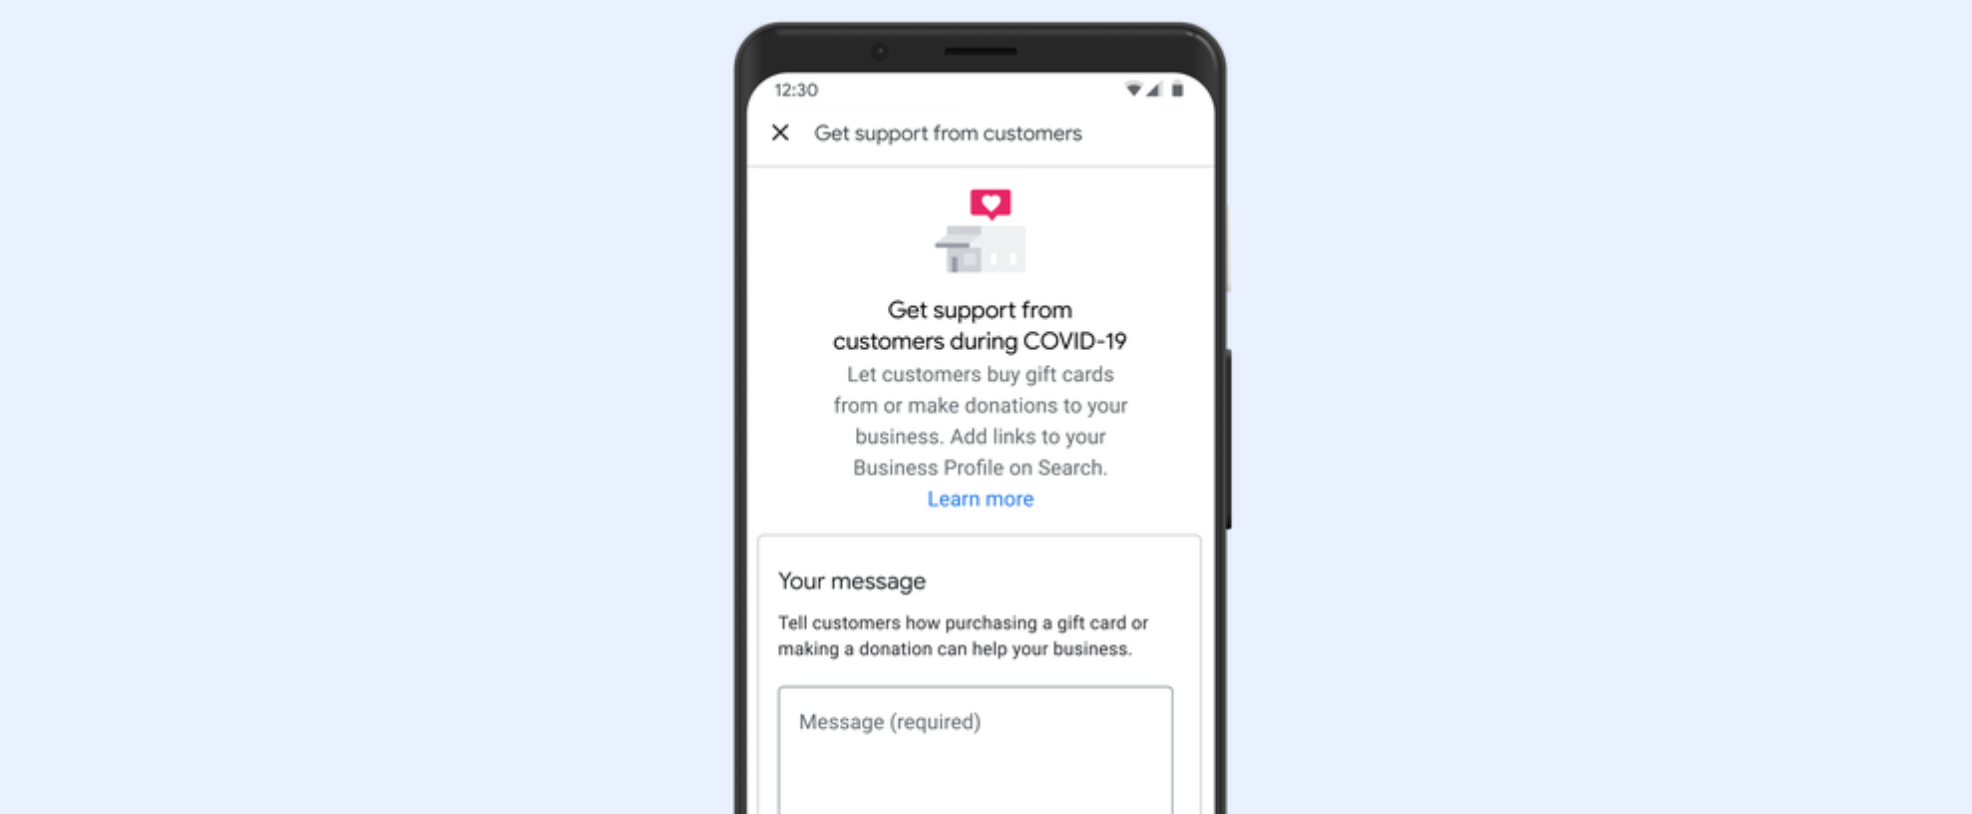 Google afegeix una manera de donar suport a les empreses locals: enllaços per a donacions i targetes de regal adjuntades als perfils empresarials